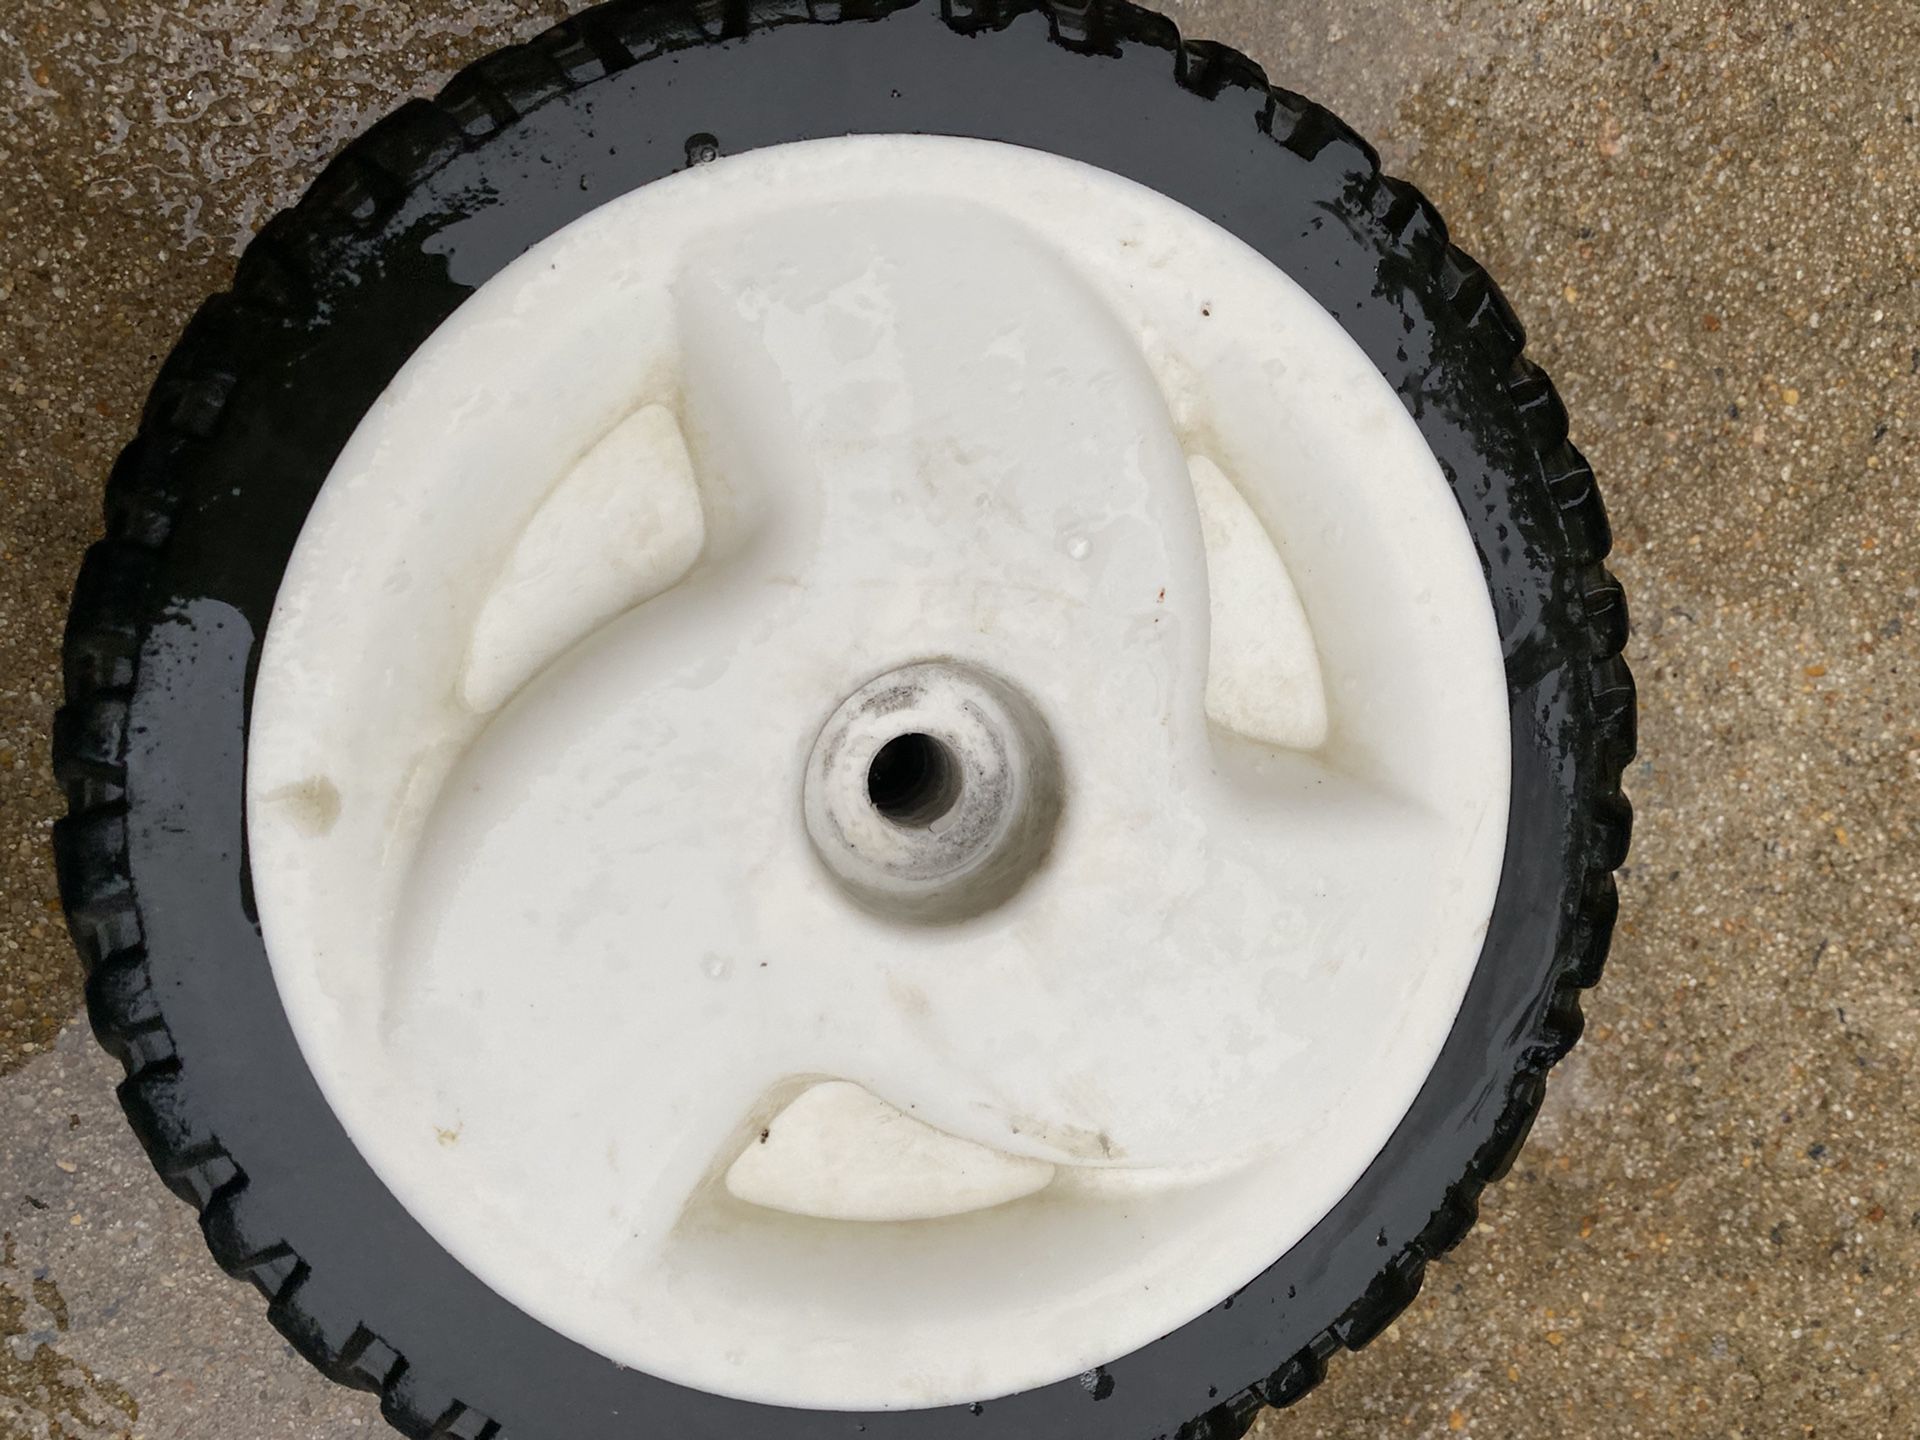 Lawn mower wheels wo gears 10 inch